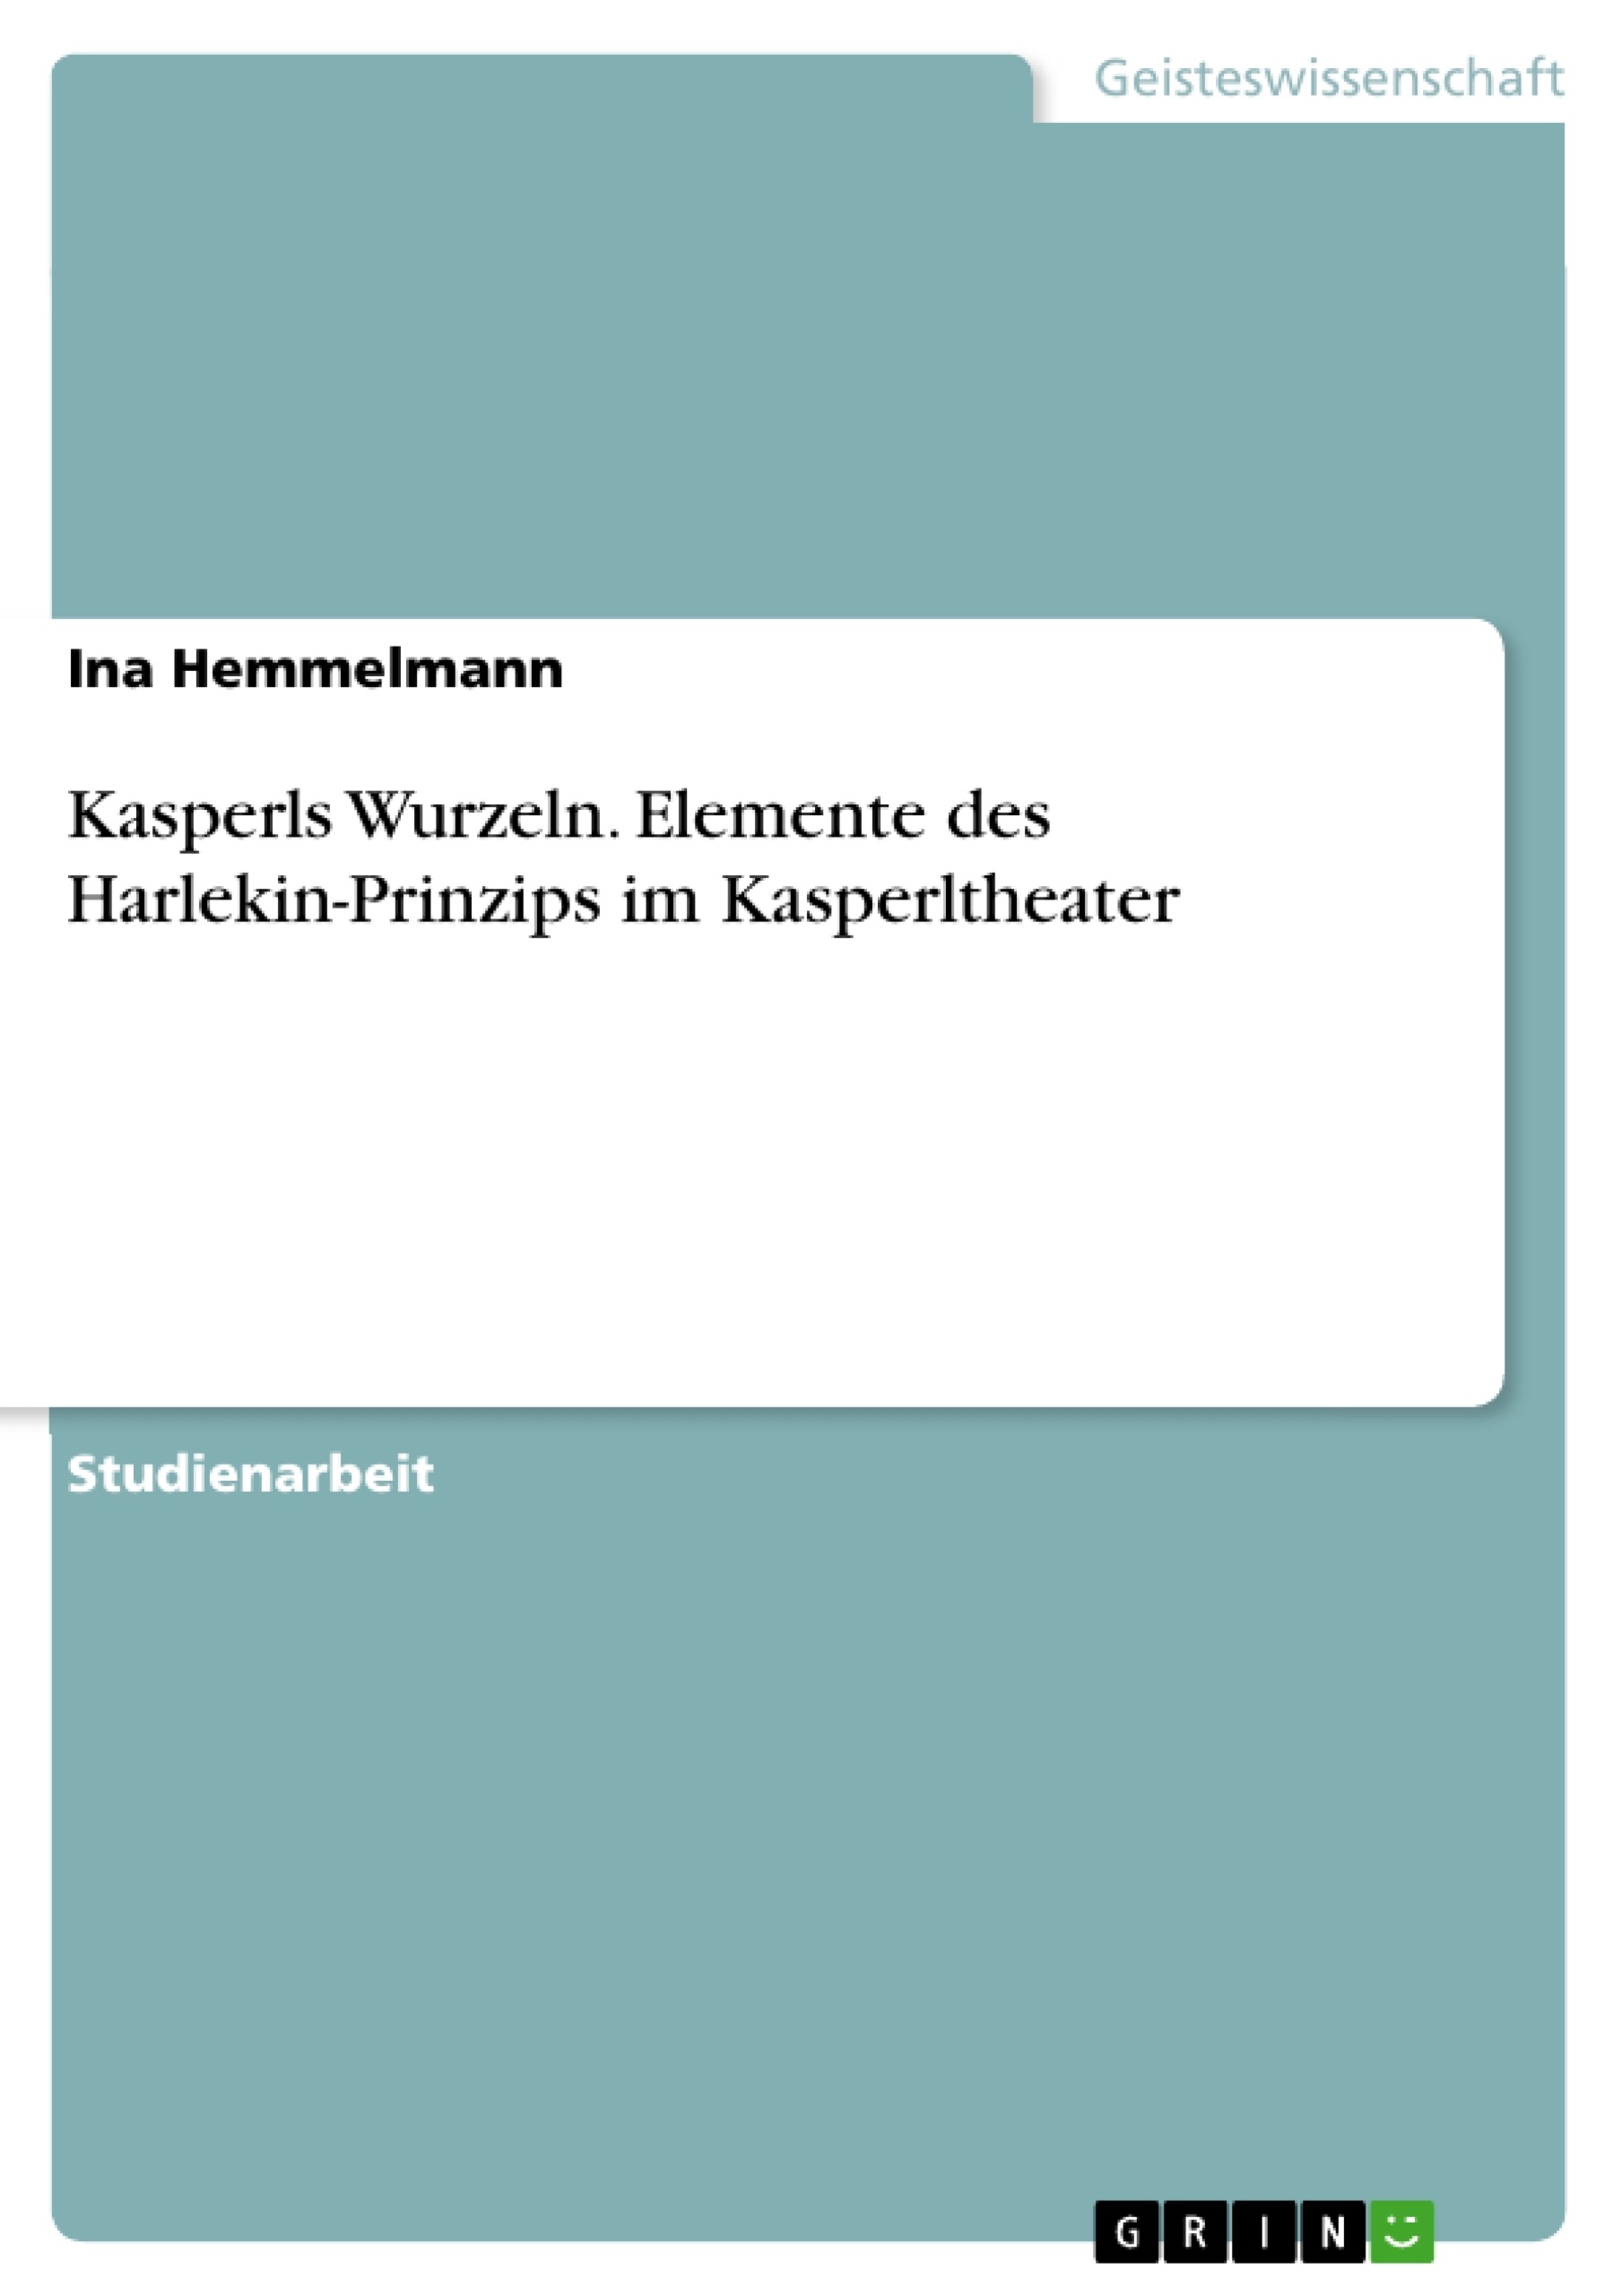 Título: Kasperls Wurzeln. Elemente des Harlekin-Prinzips im Kasperltheater